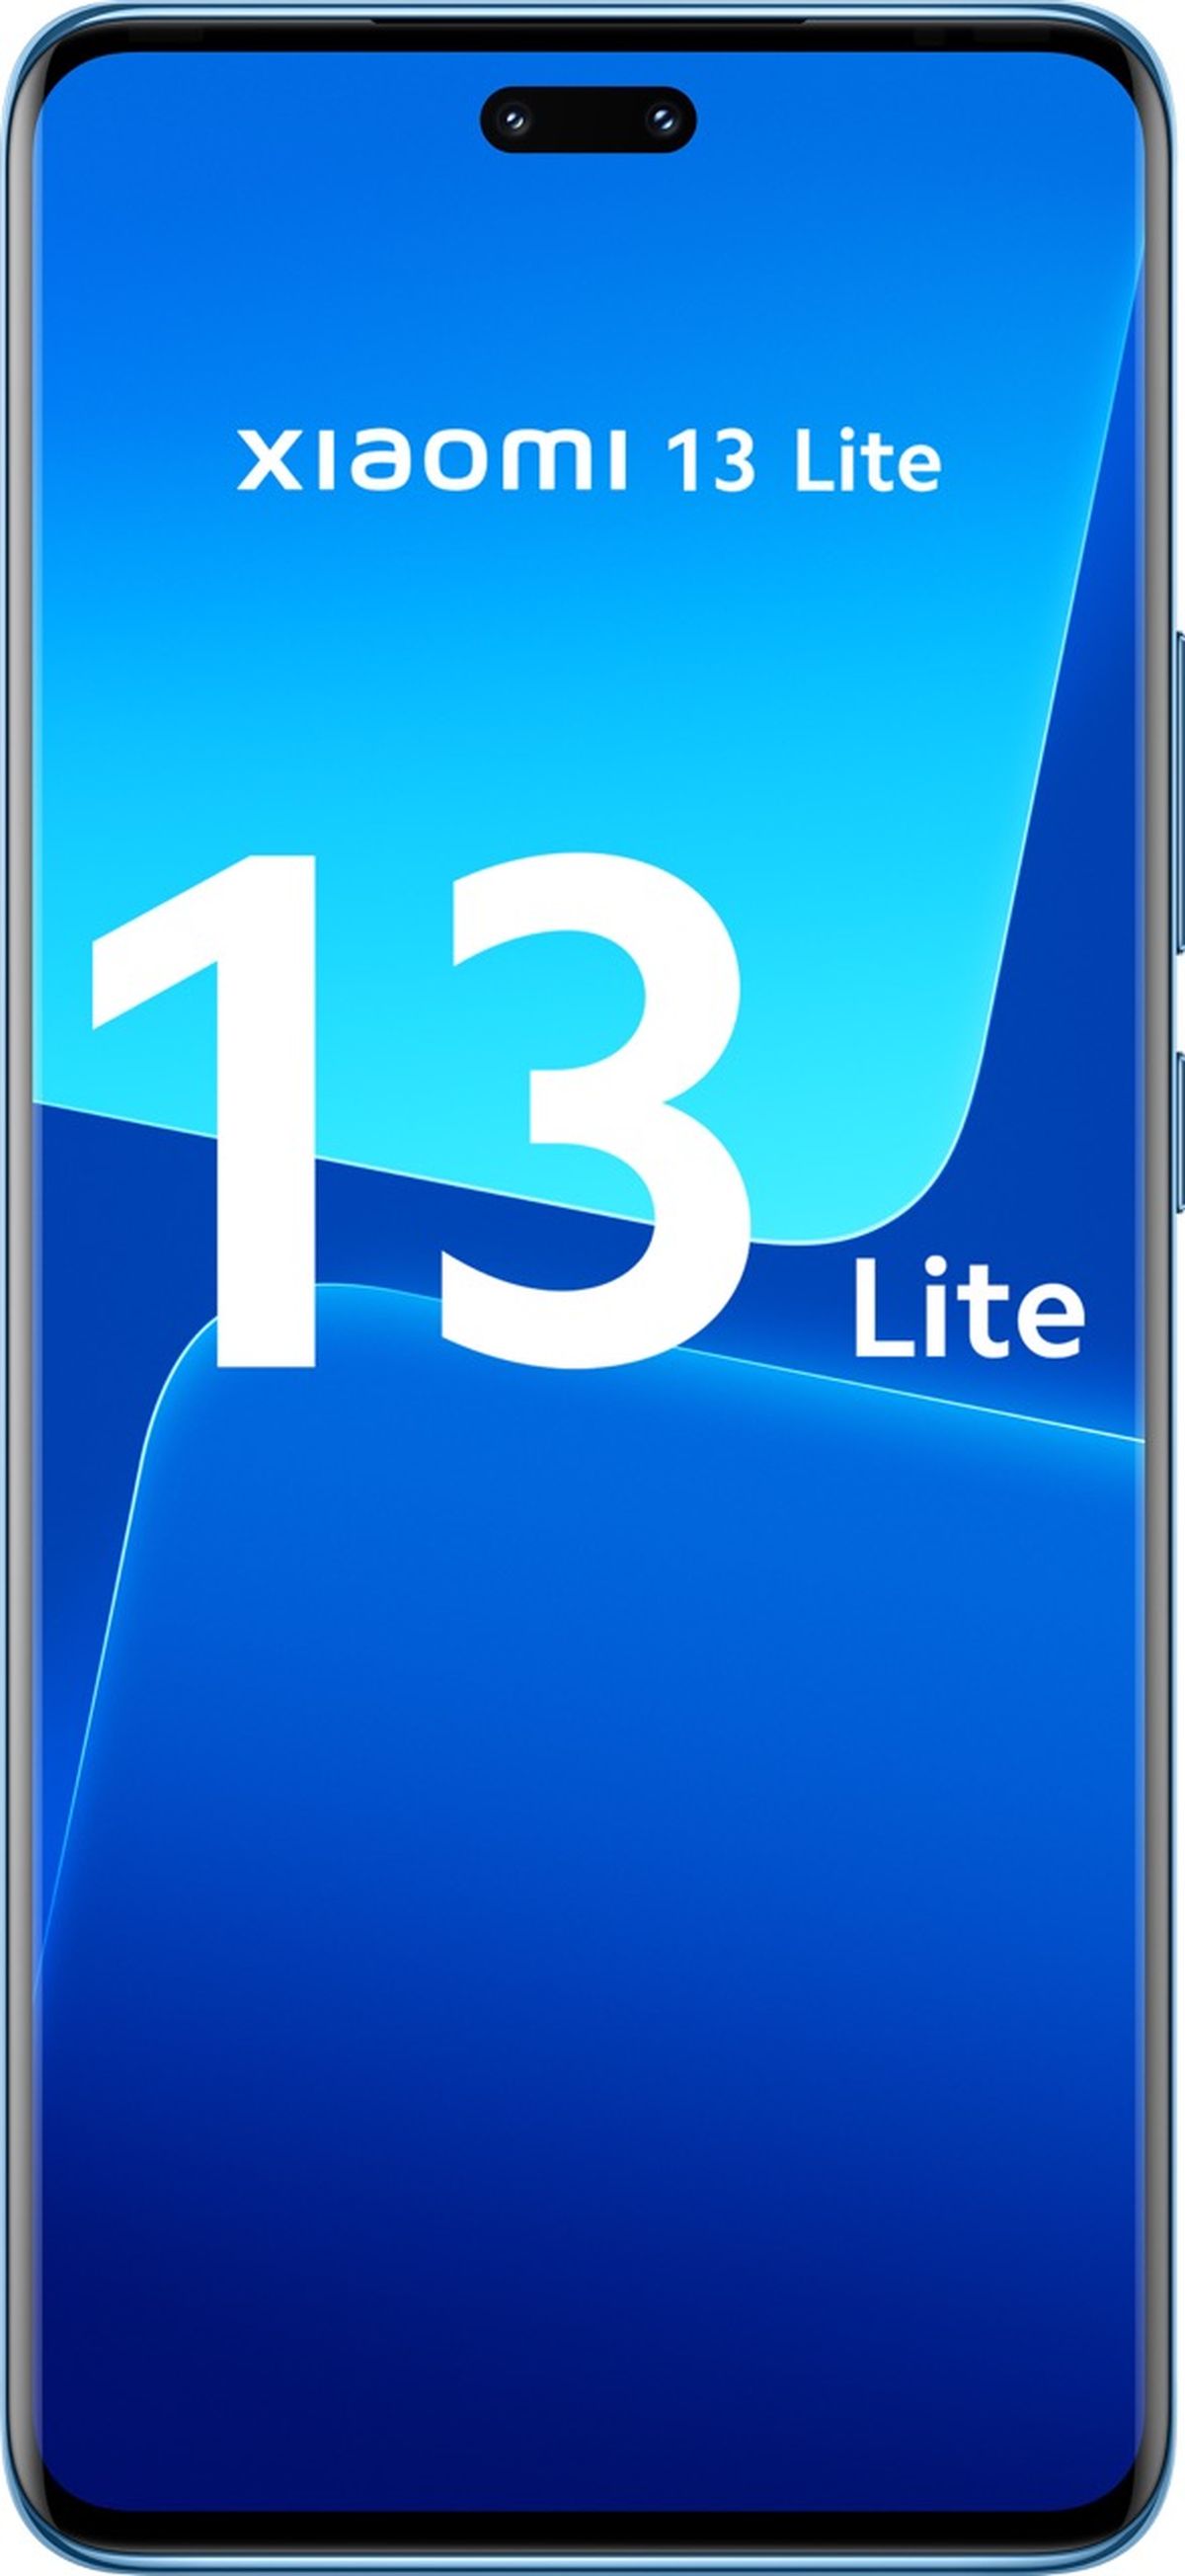 Xiaomi 13 Lite: características y valoraciones